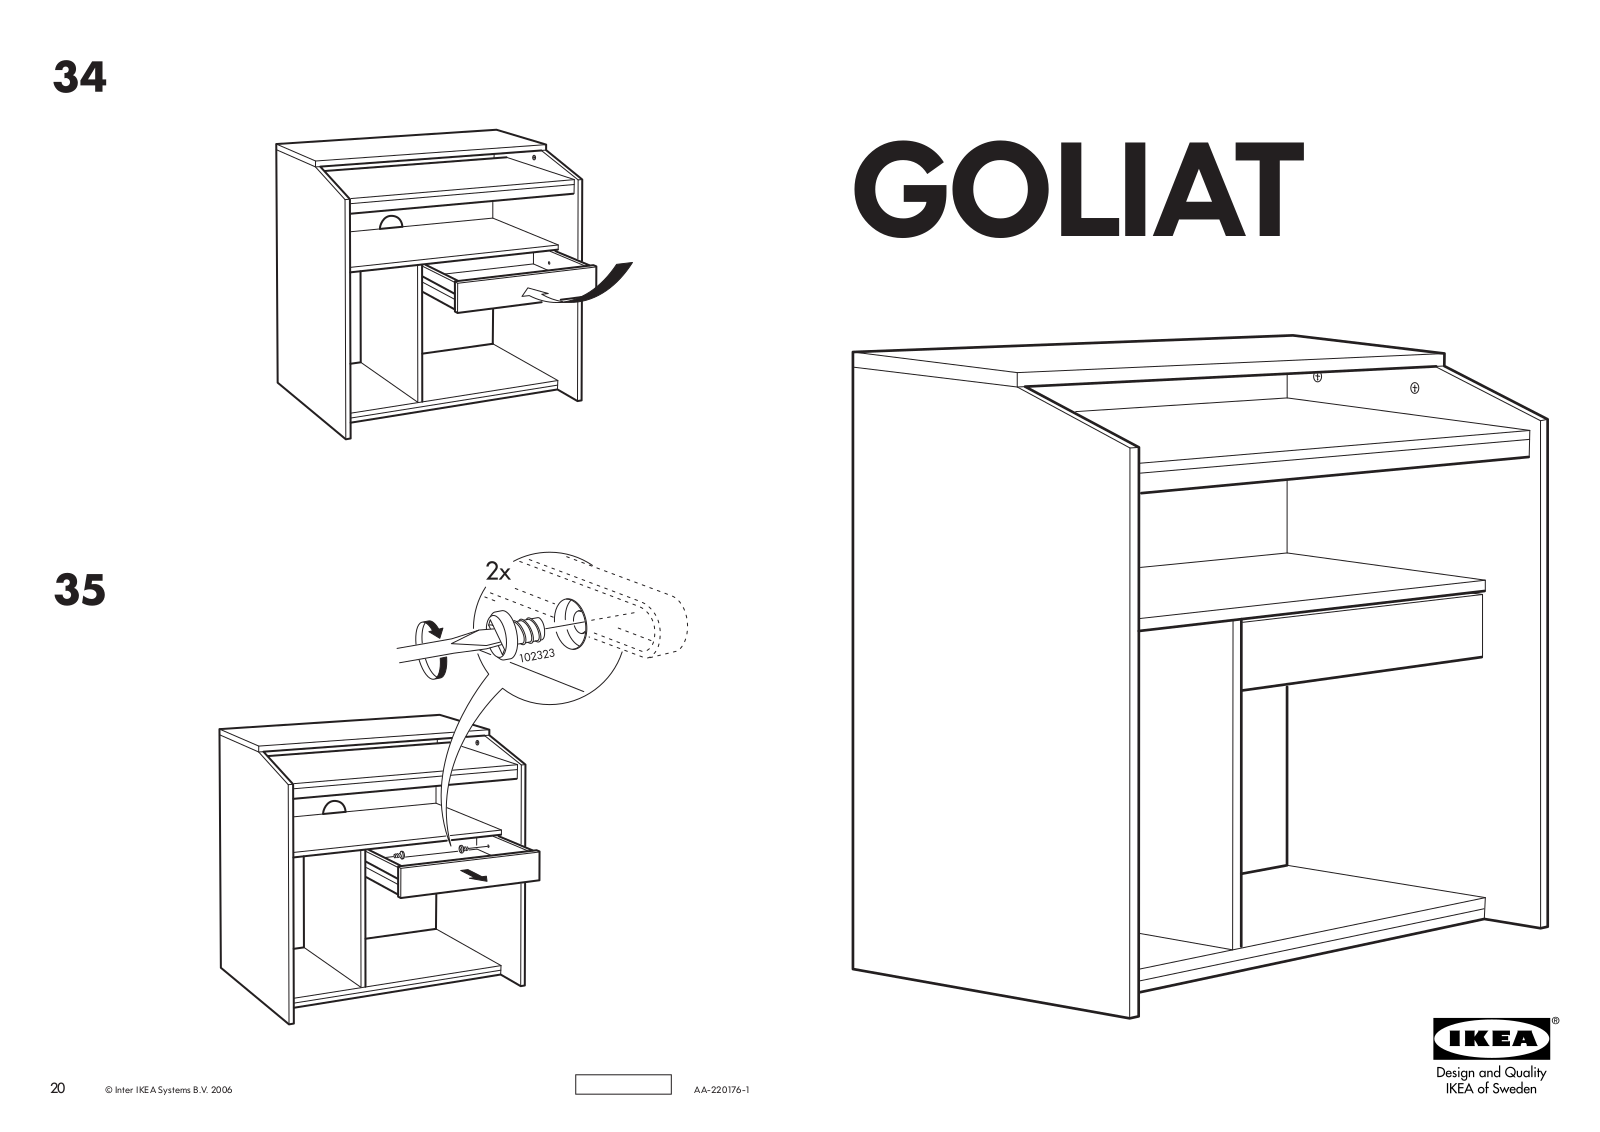 IKEA GOLIAT COMPUTER DESK 31X20